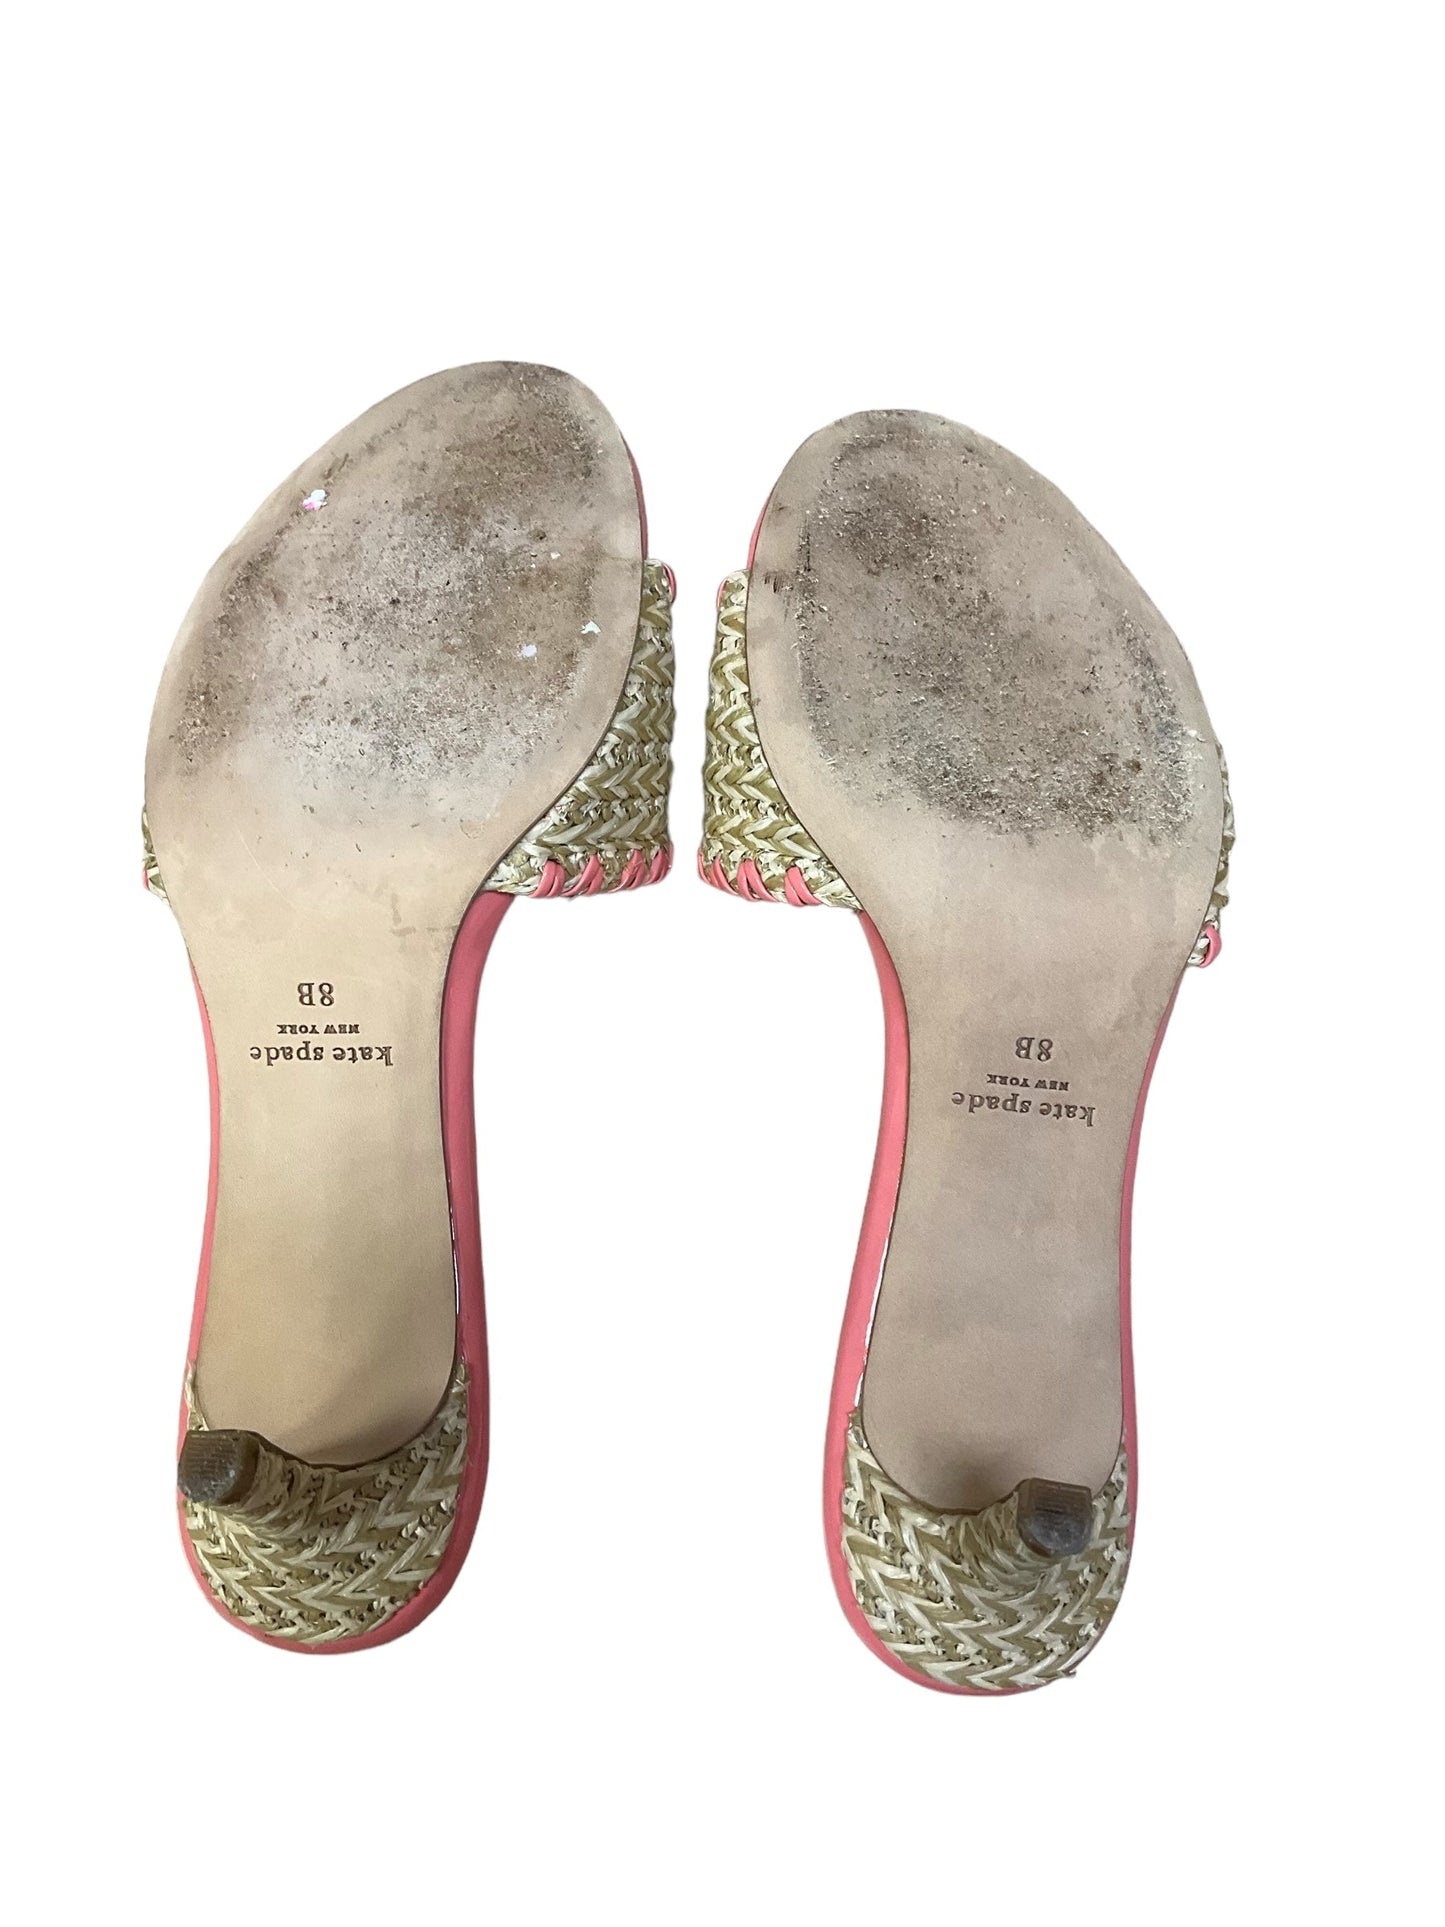 Coral Sandals Designer Kate Spade, Size 8